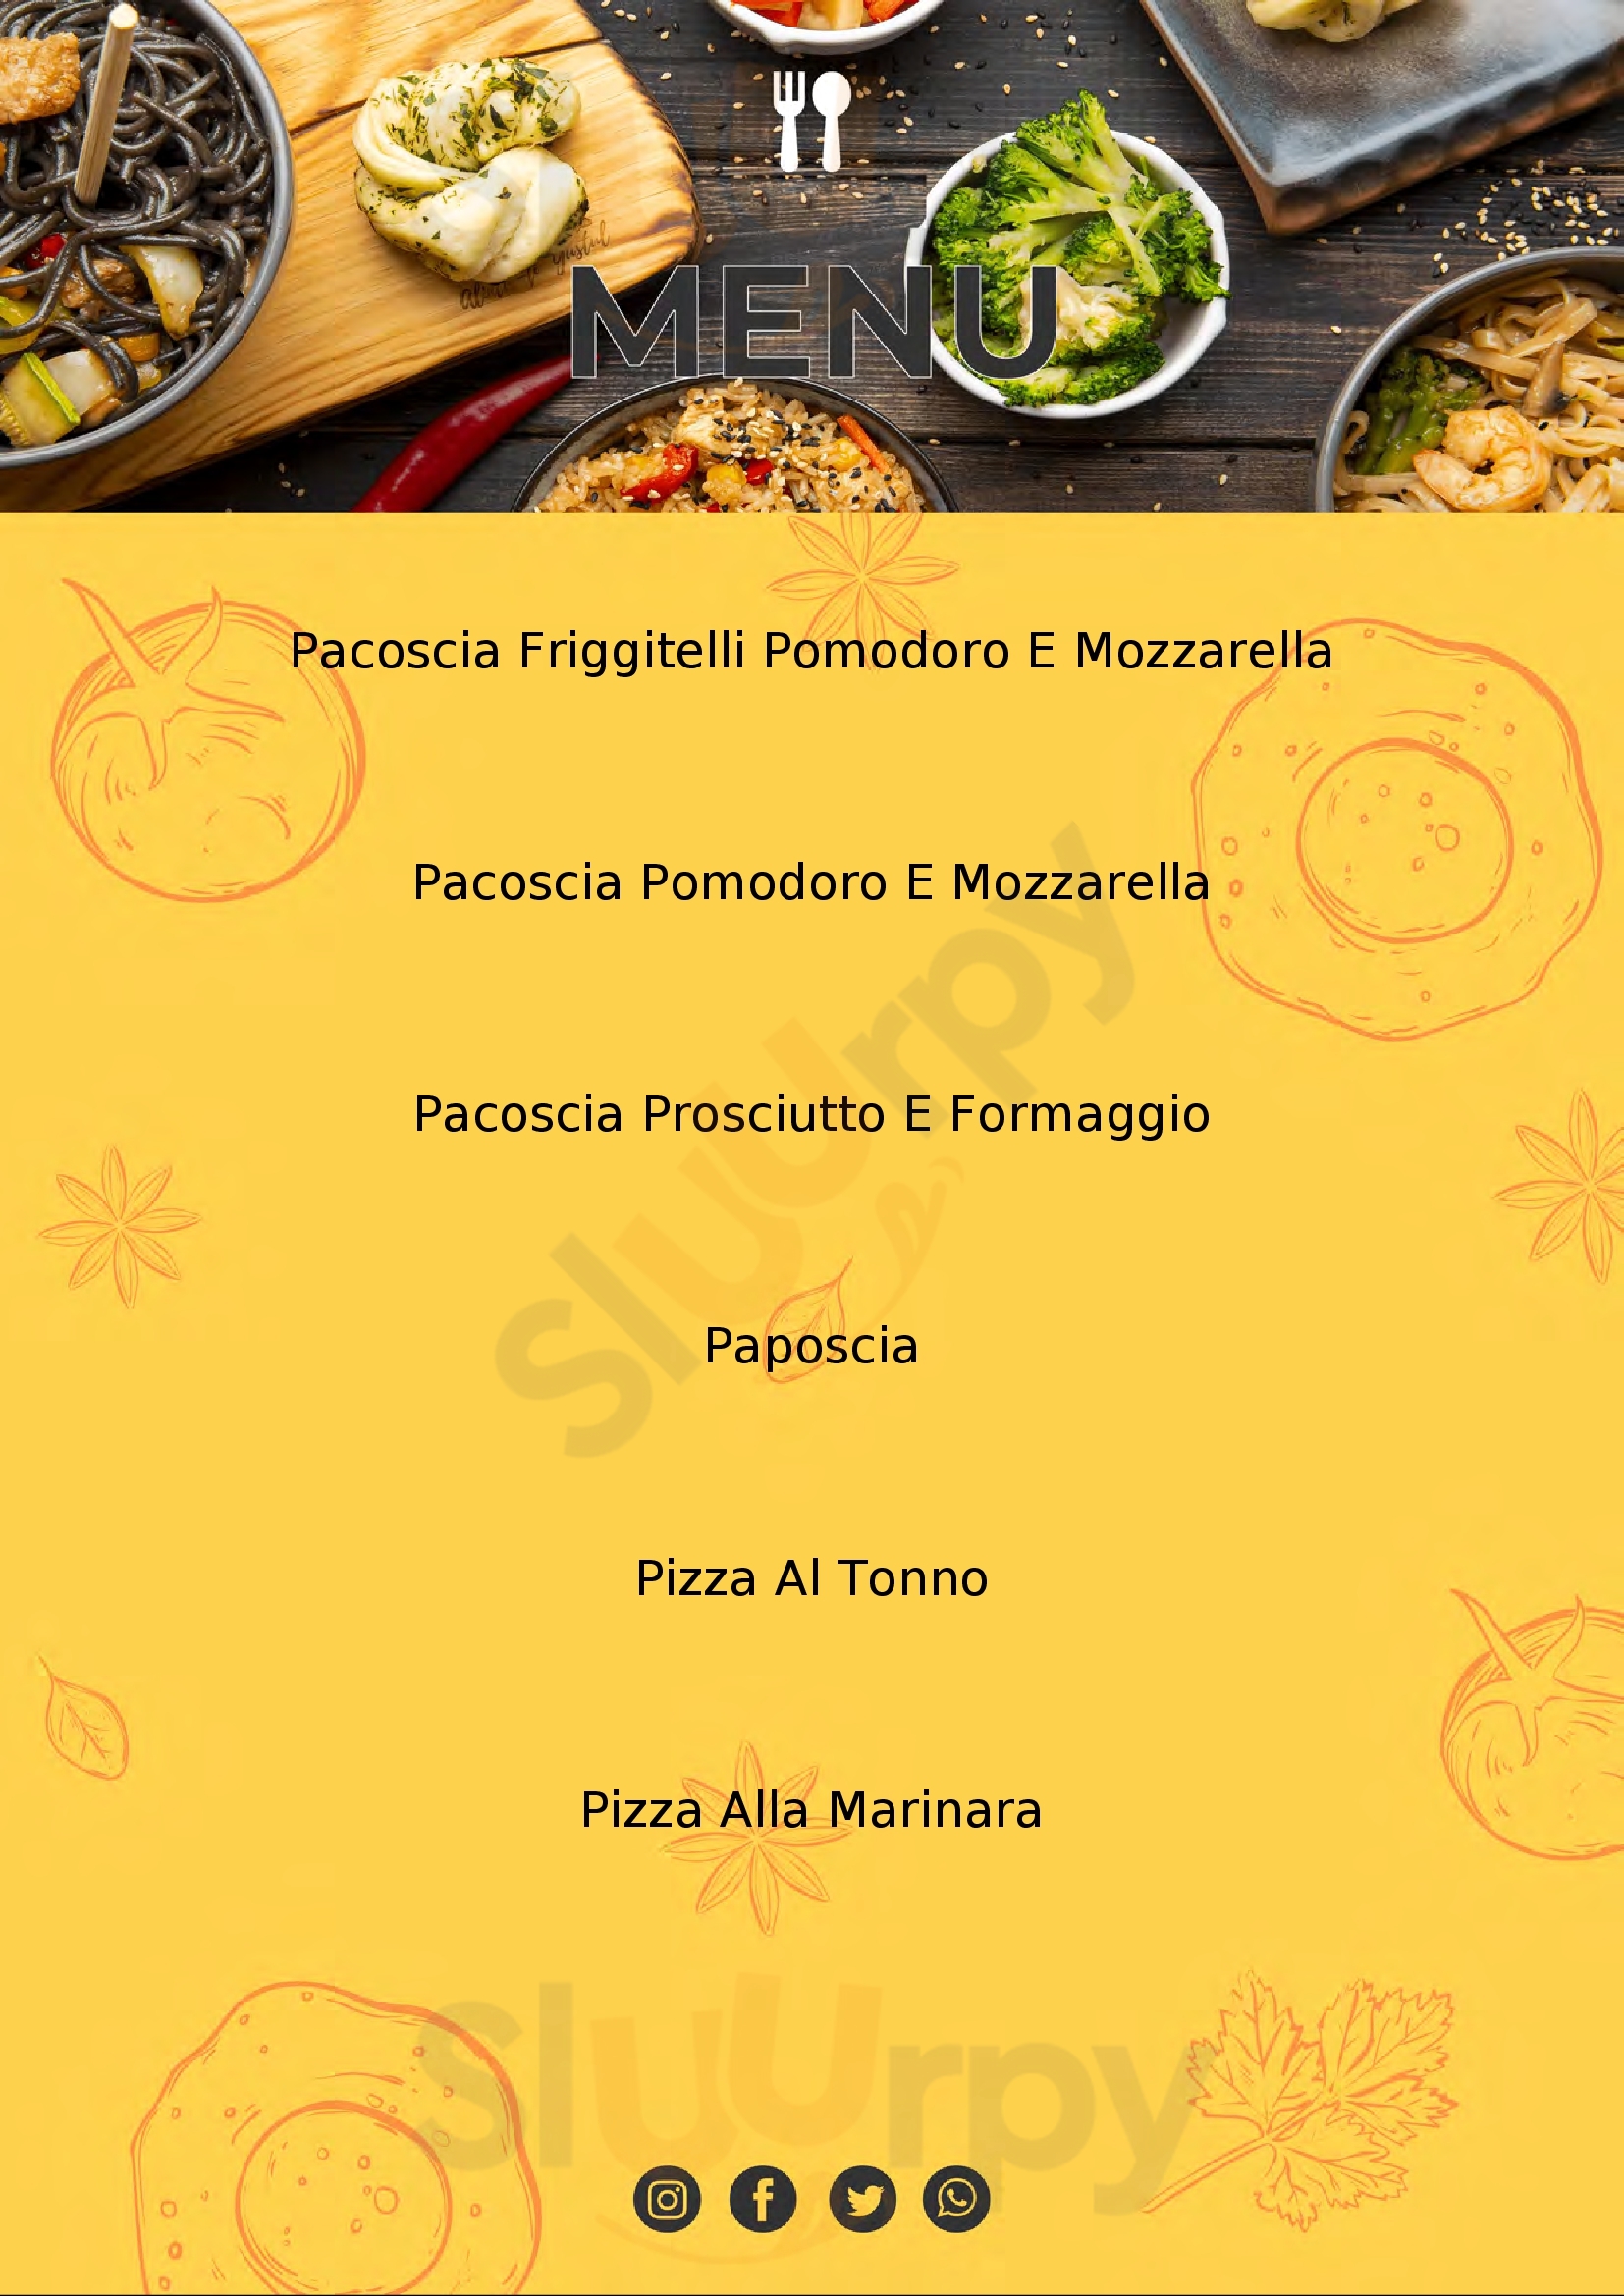 Pizzeria Marianna Peschici menù 1 pagina